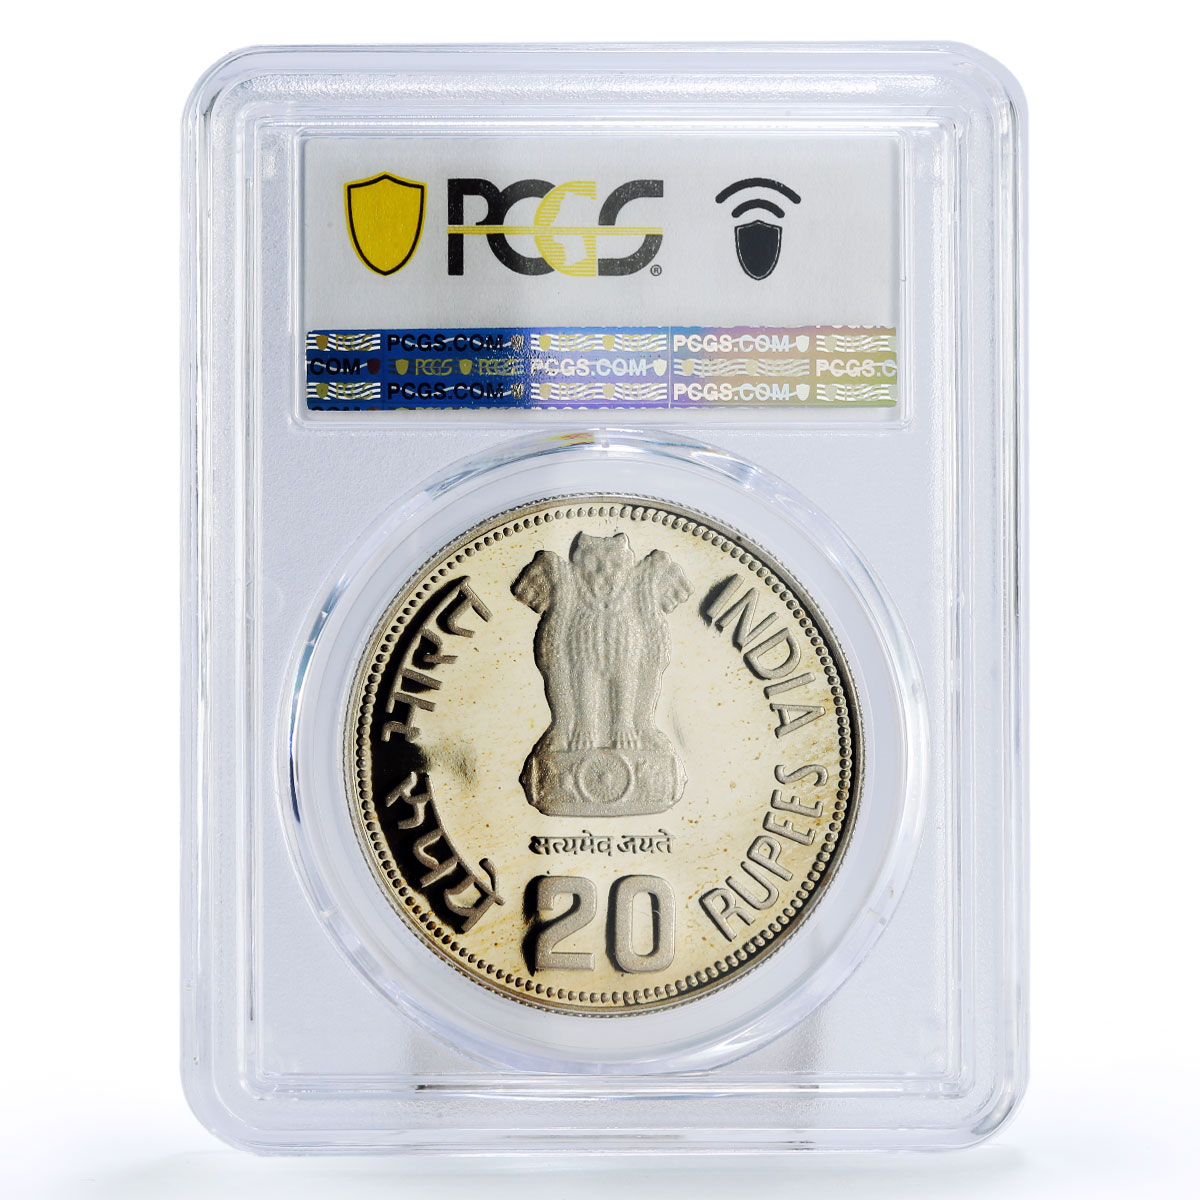 India 20 rupees Indira Gandhi Politics PR67 PCGS CuNi coin 1985